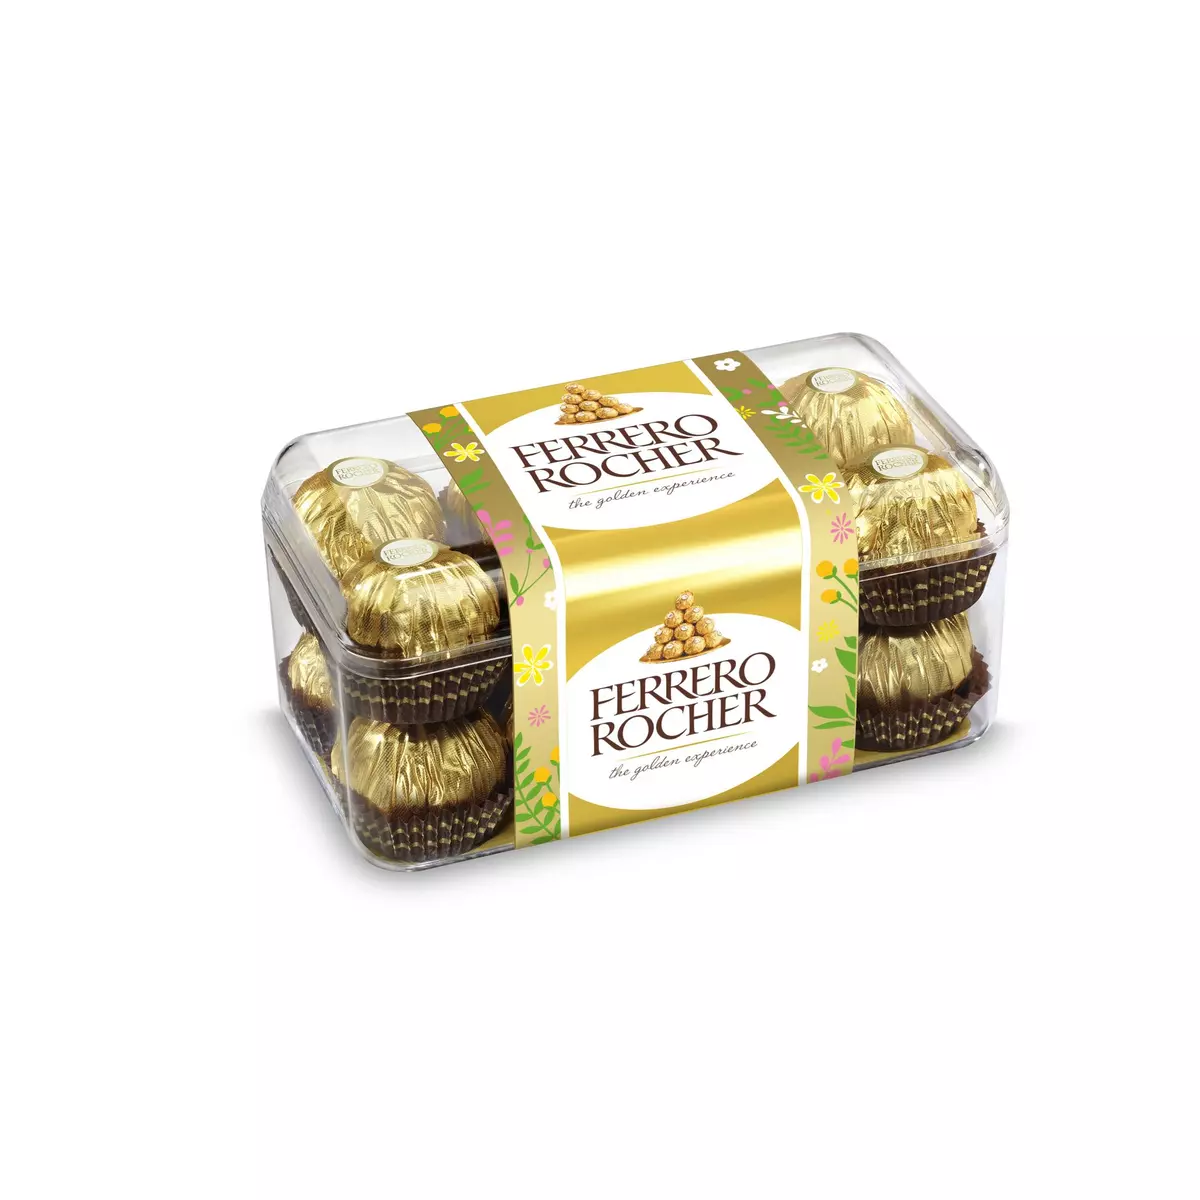 Ferrero Rocher Chocolat The Golden Expérience 30 Pièces 375g